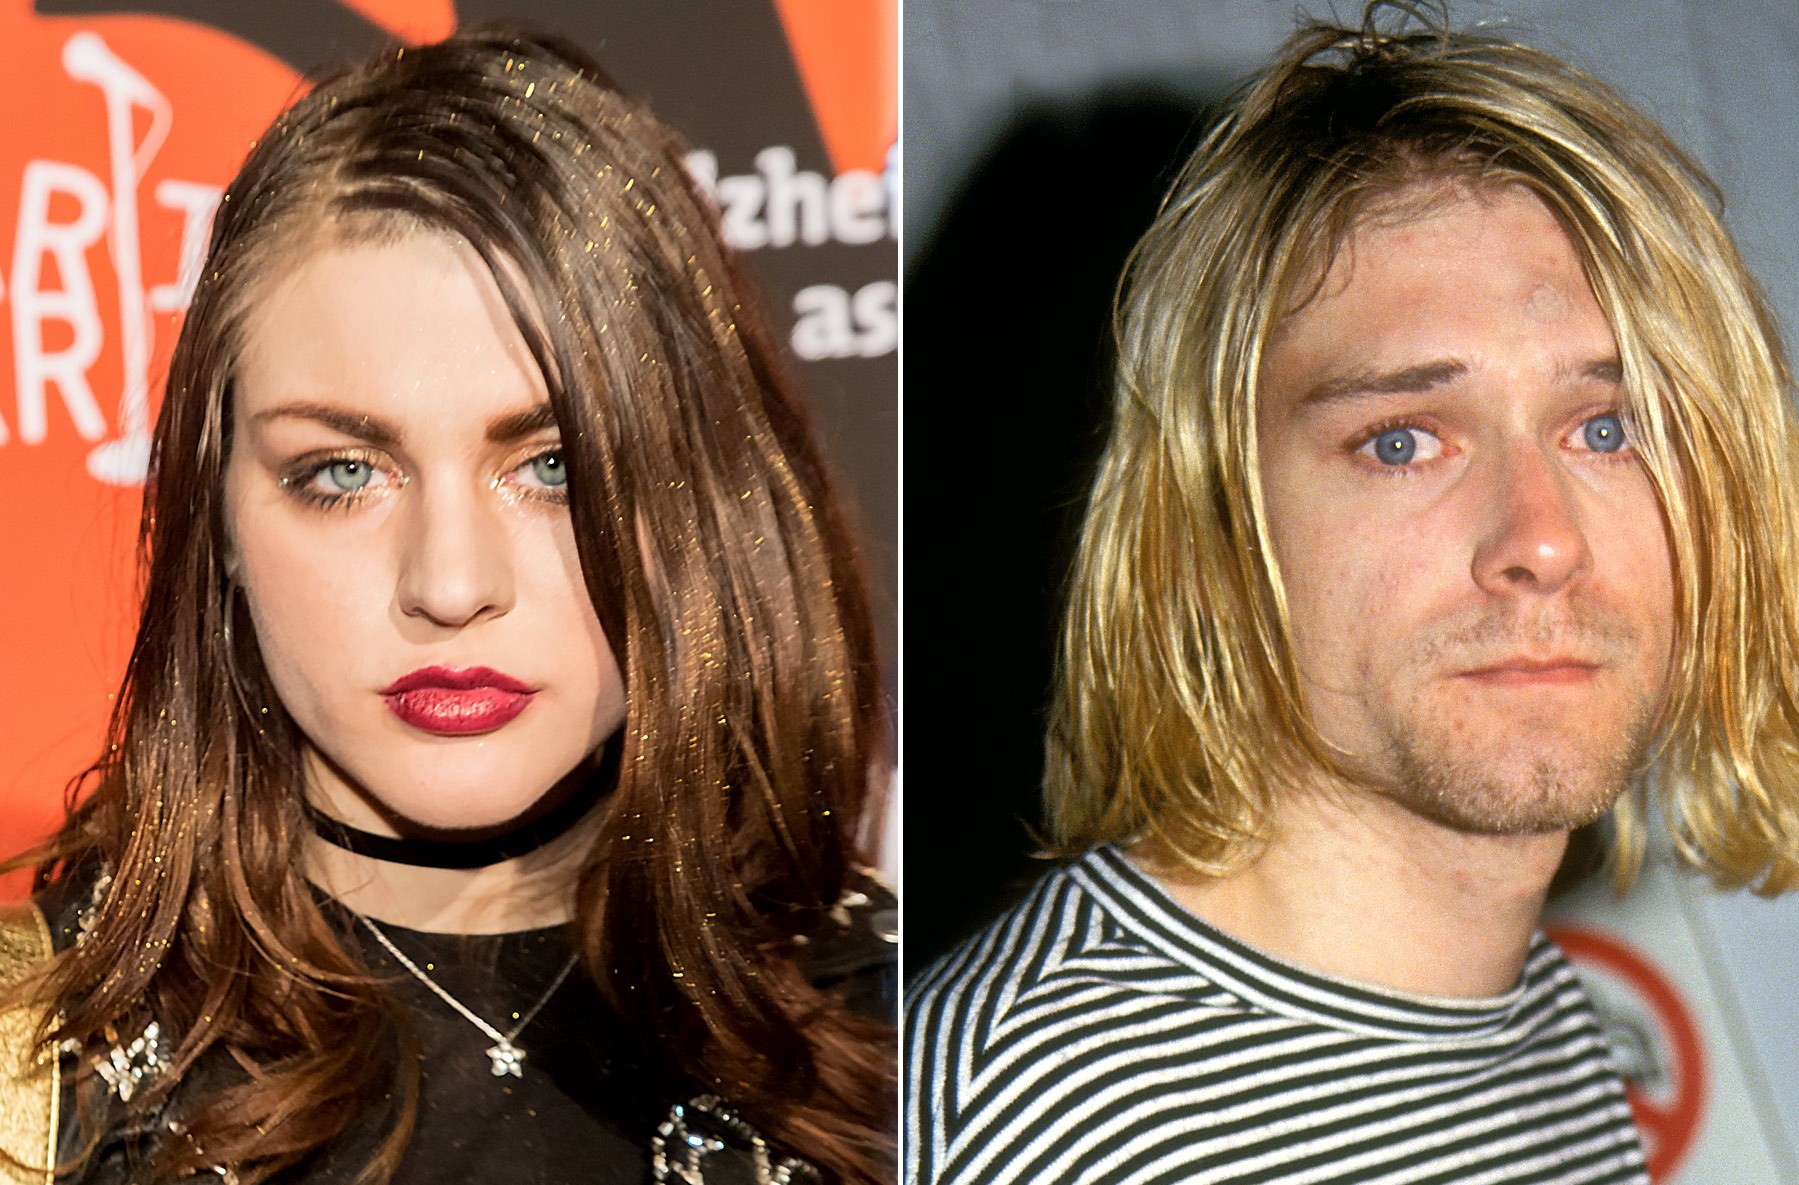 Kurt Kobain ha lasciato un’eredità milionaria alla figlia: svelati i suoi guadagni mensili